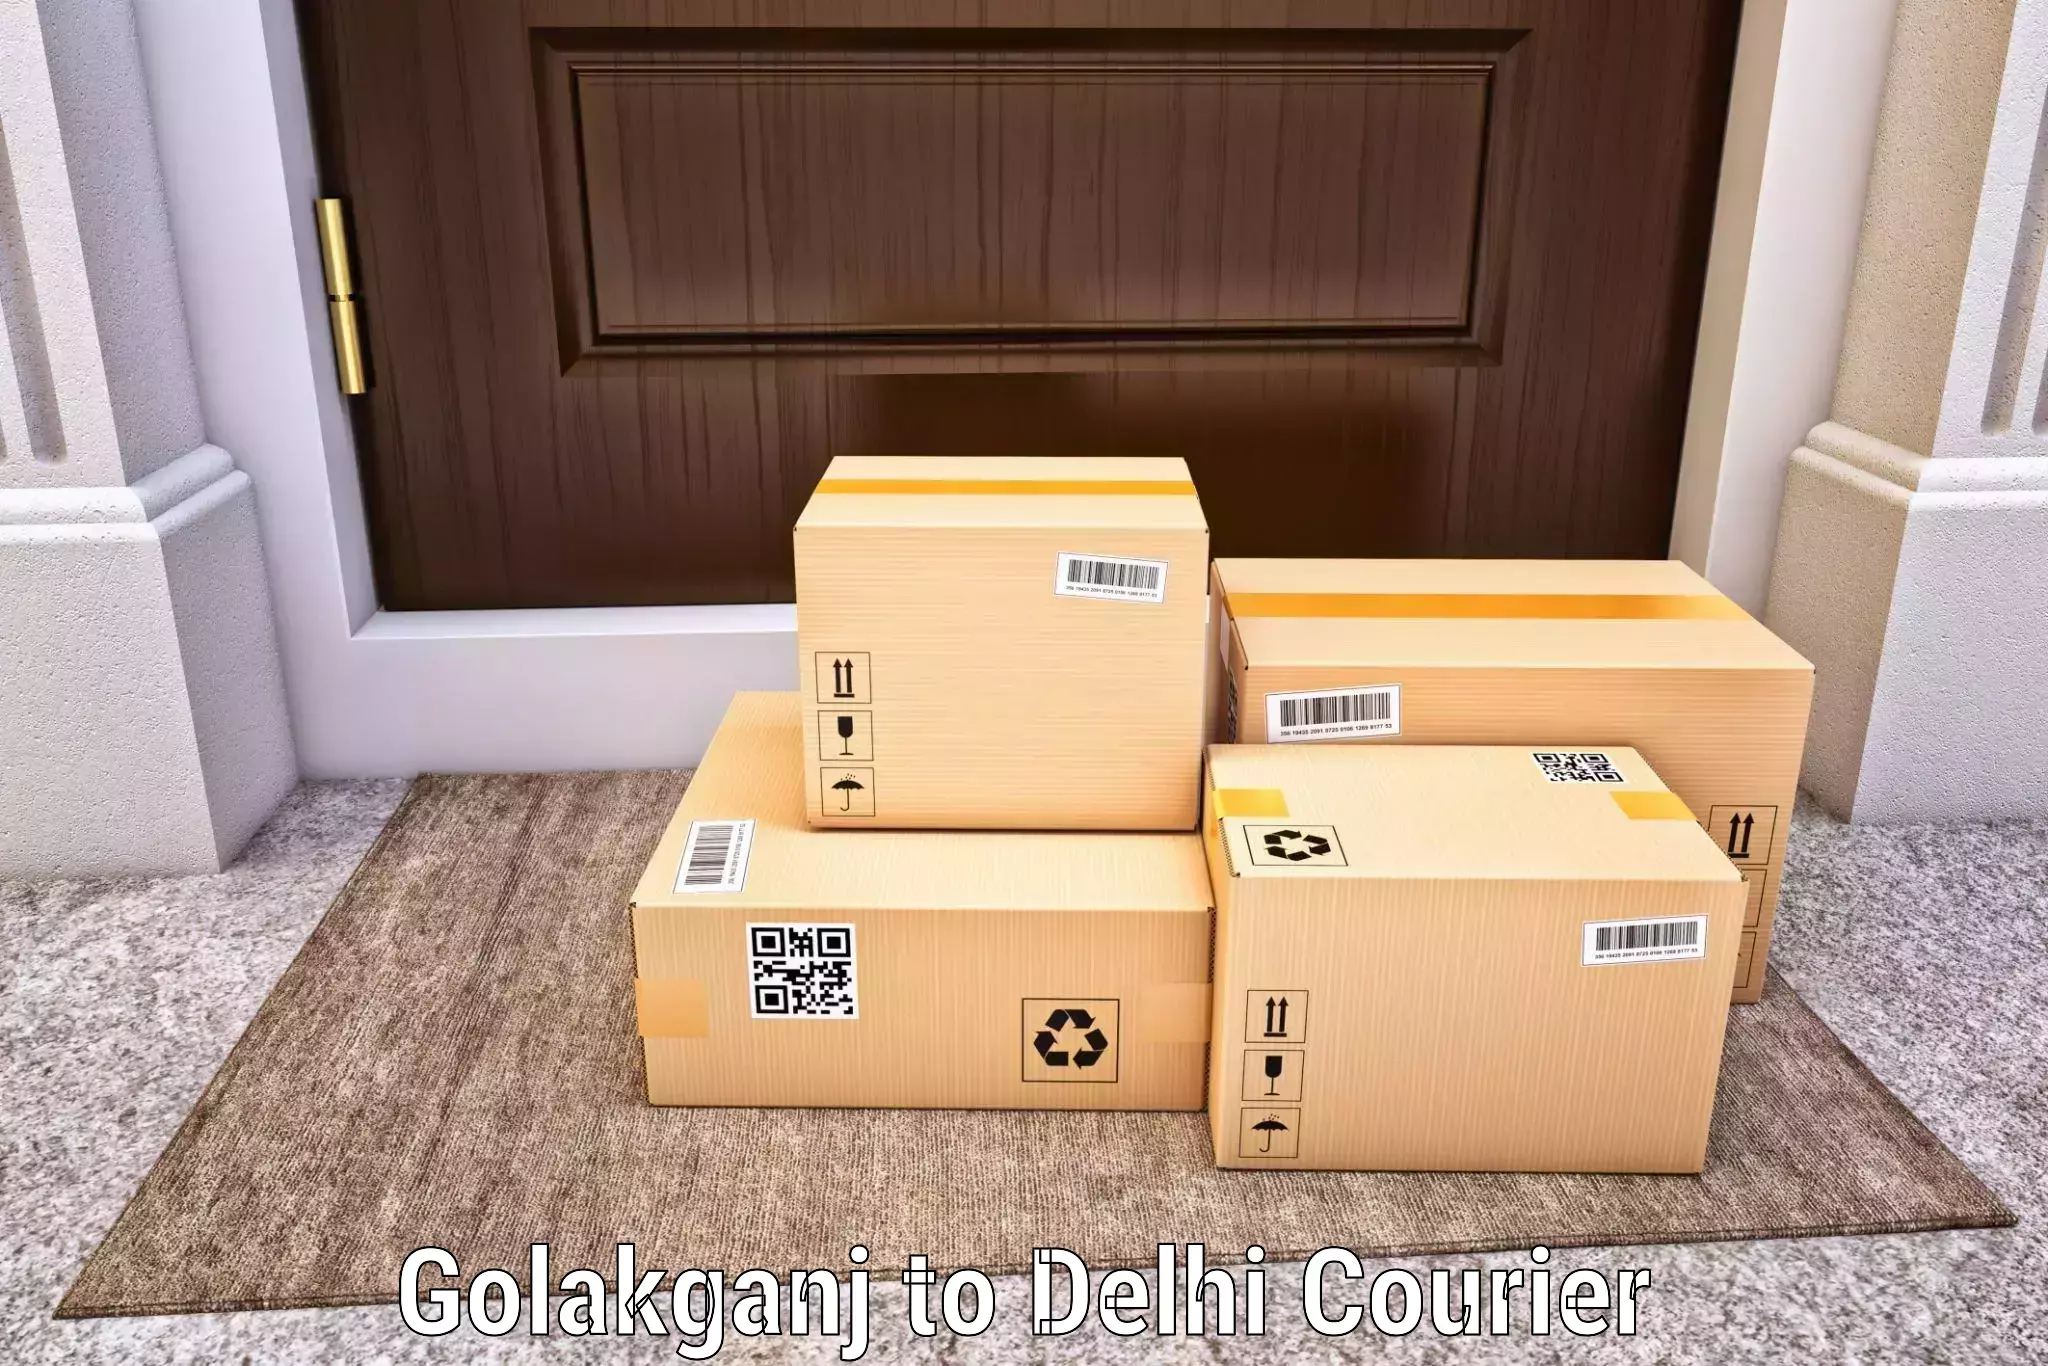 Courier service comparison Golakganj to Lodhi Road